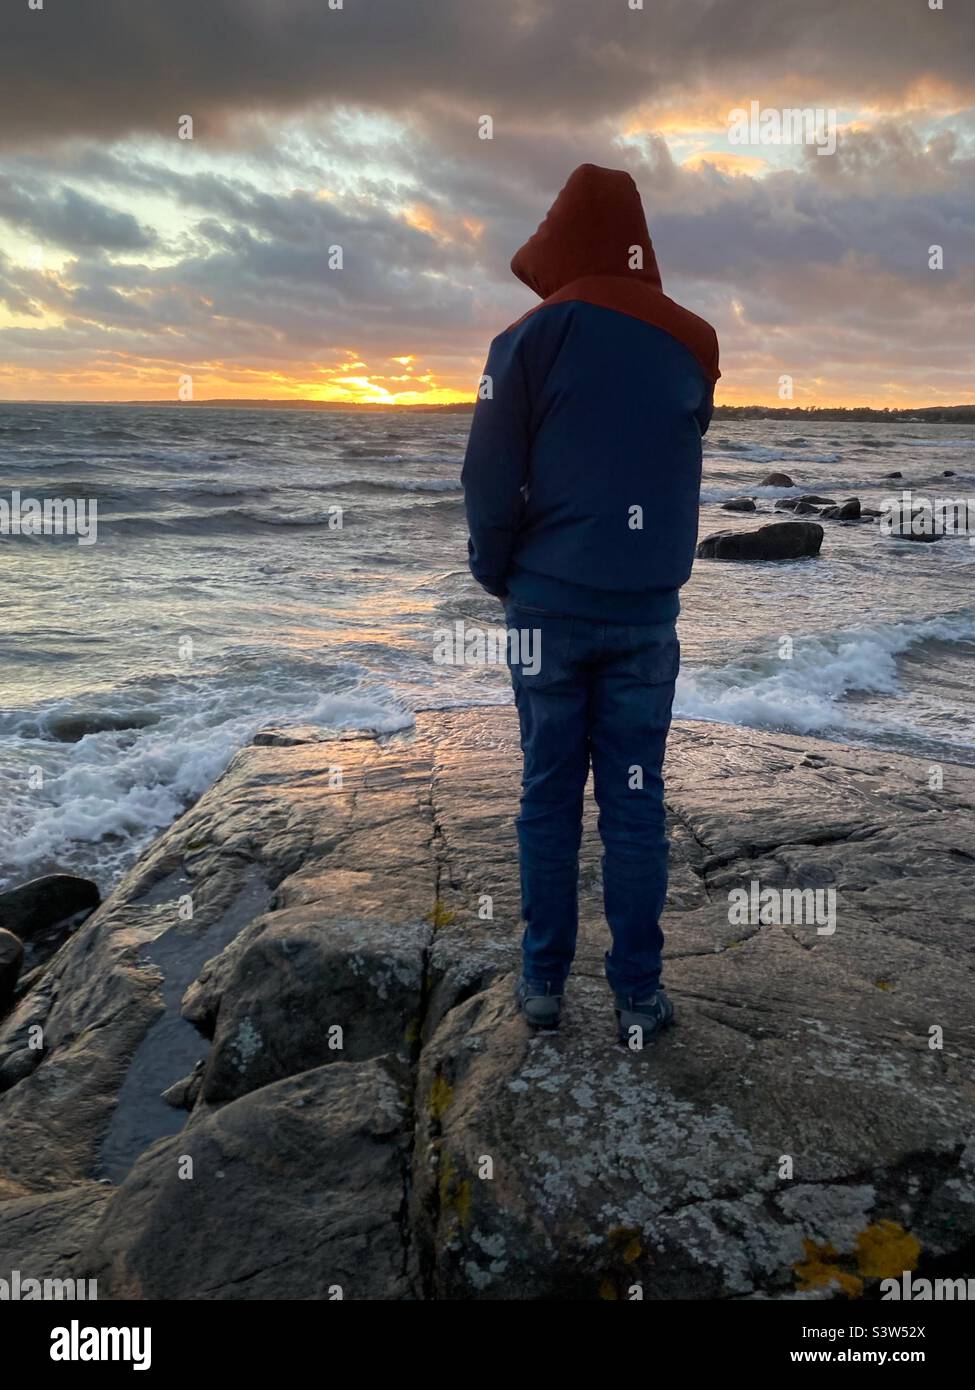 Un pré-adolescent debout en mer Baltique sur la côte ouest de la Suède pendant une tempête Banque D'Images